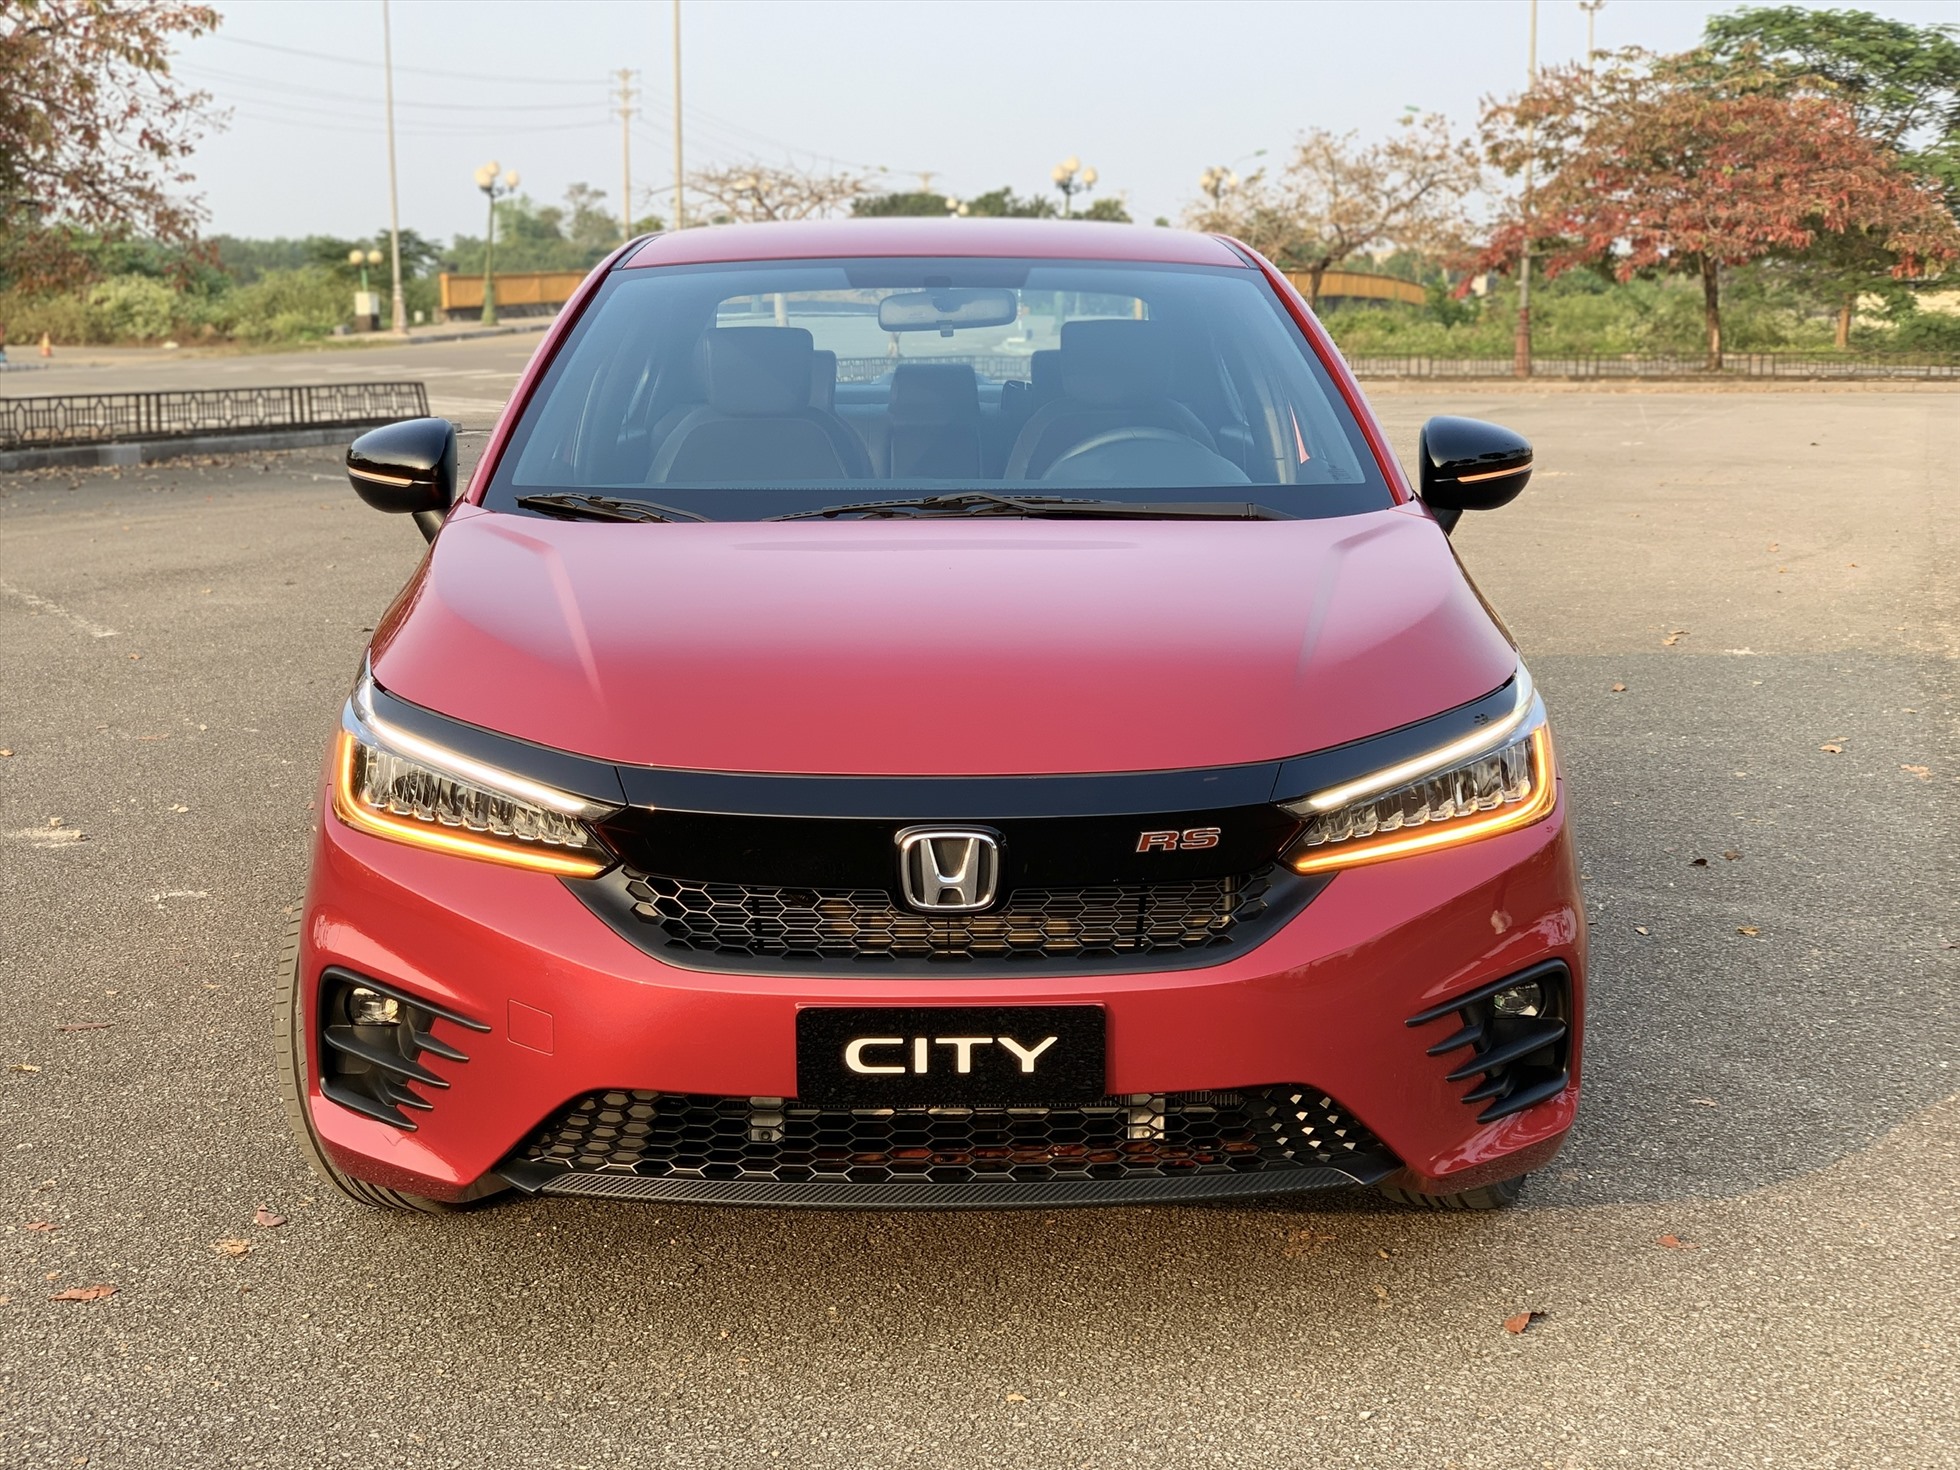 Honda City đang tạm thời vượt qua Toyota Vios để trở thành sedan giá rẻ bán chạy thứ 2 tại thị trường Việt Nam khi doanh số đạt 2.451 xe trong quý đầu năm. Ảnh: Khánh Linh.